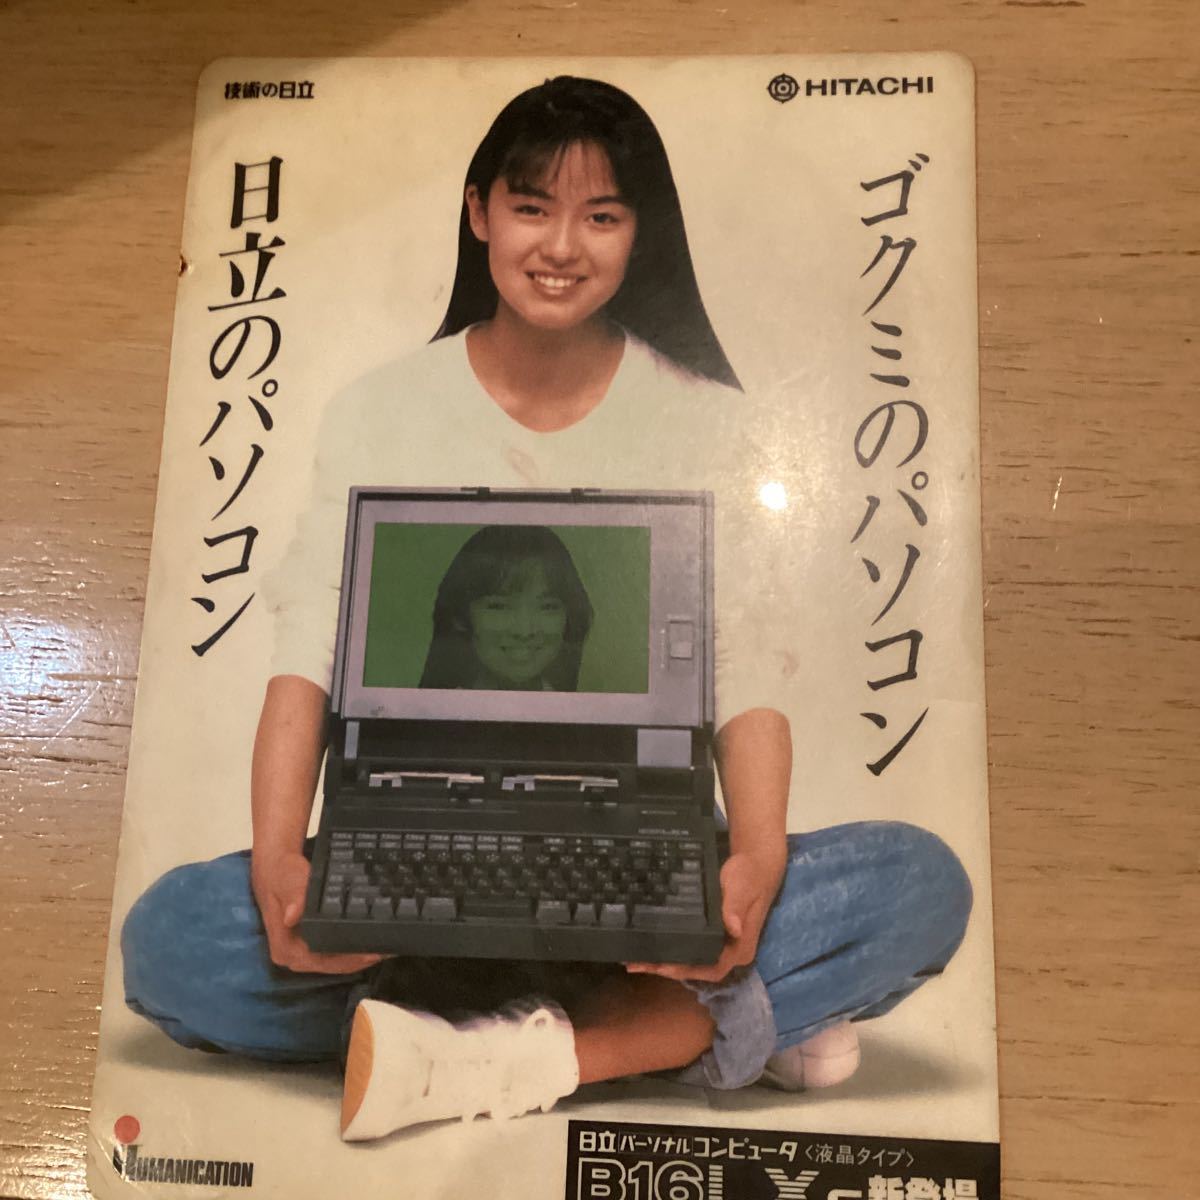 ★★ Kumiko Goto B5 Size Персональный компьютер B16LXS 1988 Hitachi Pales Proceotion Gokumi обесцвечивание желтое